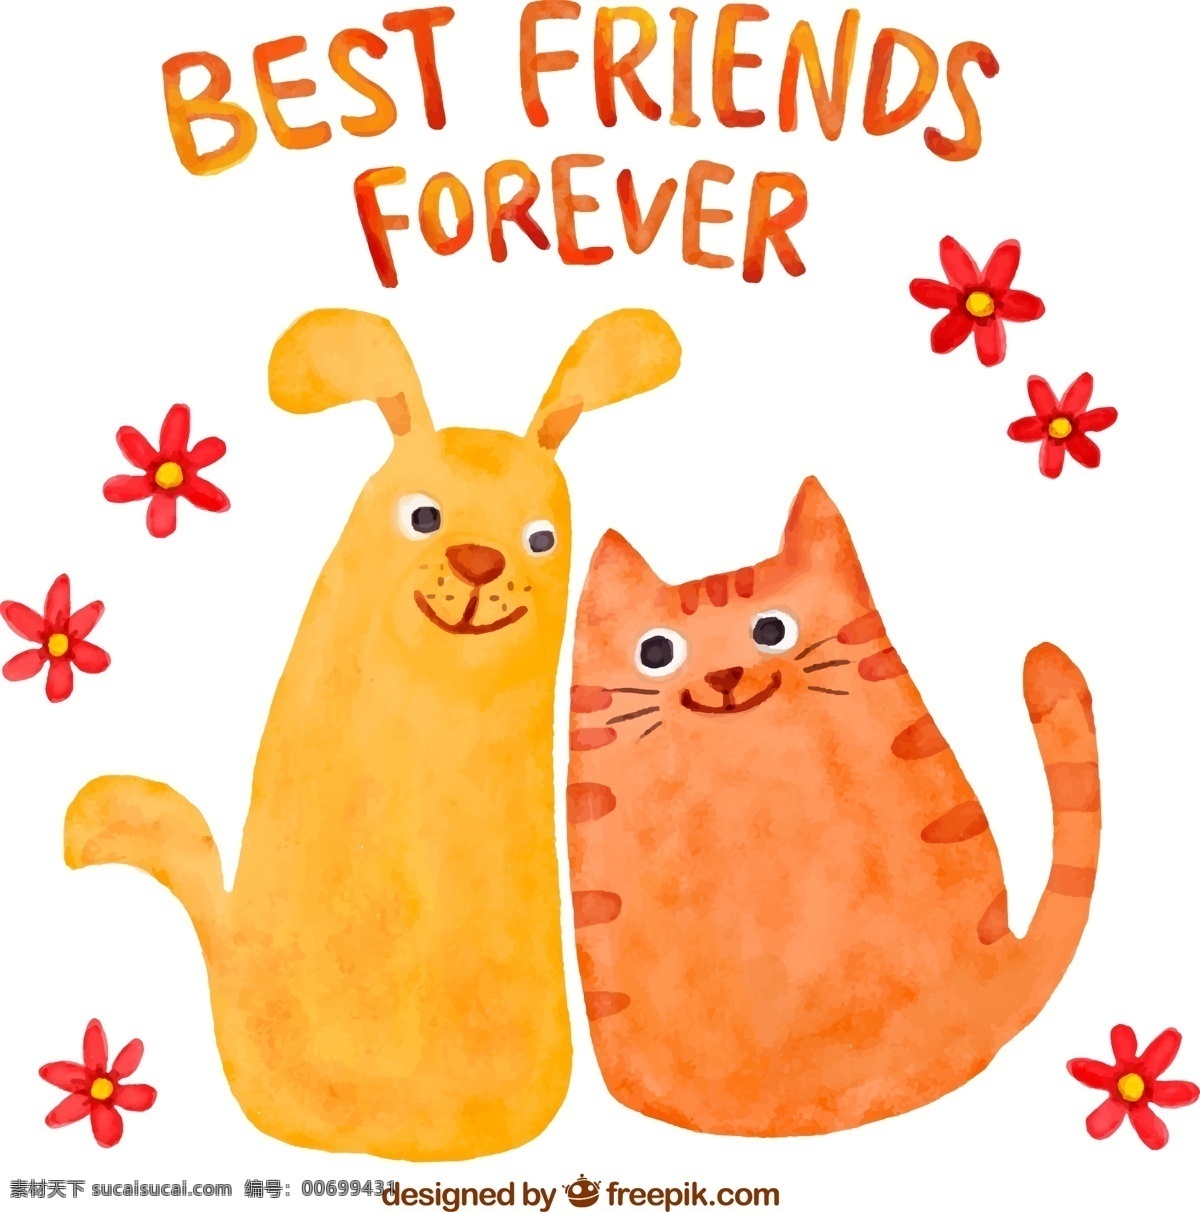 彩绘 猫 狗 朋友 矢量 矢量素材 动物 卡通动物 卡通